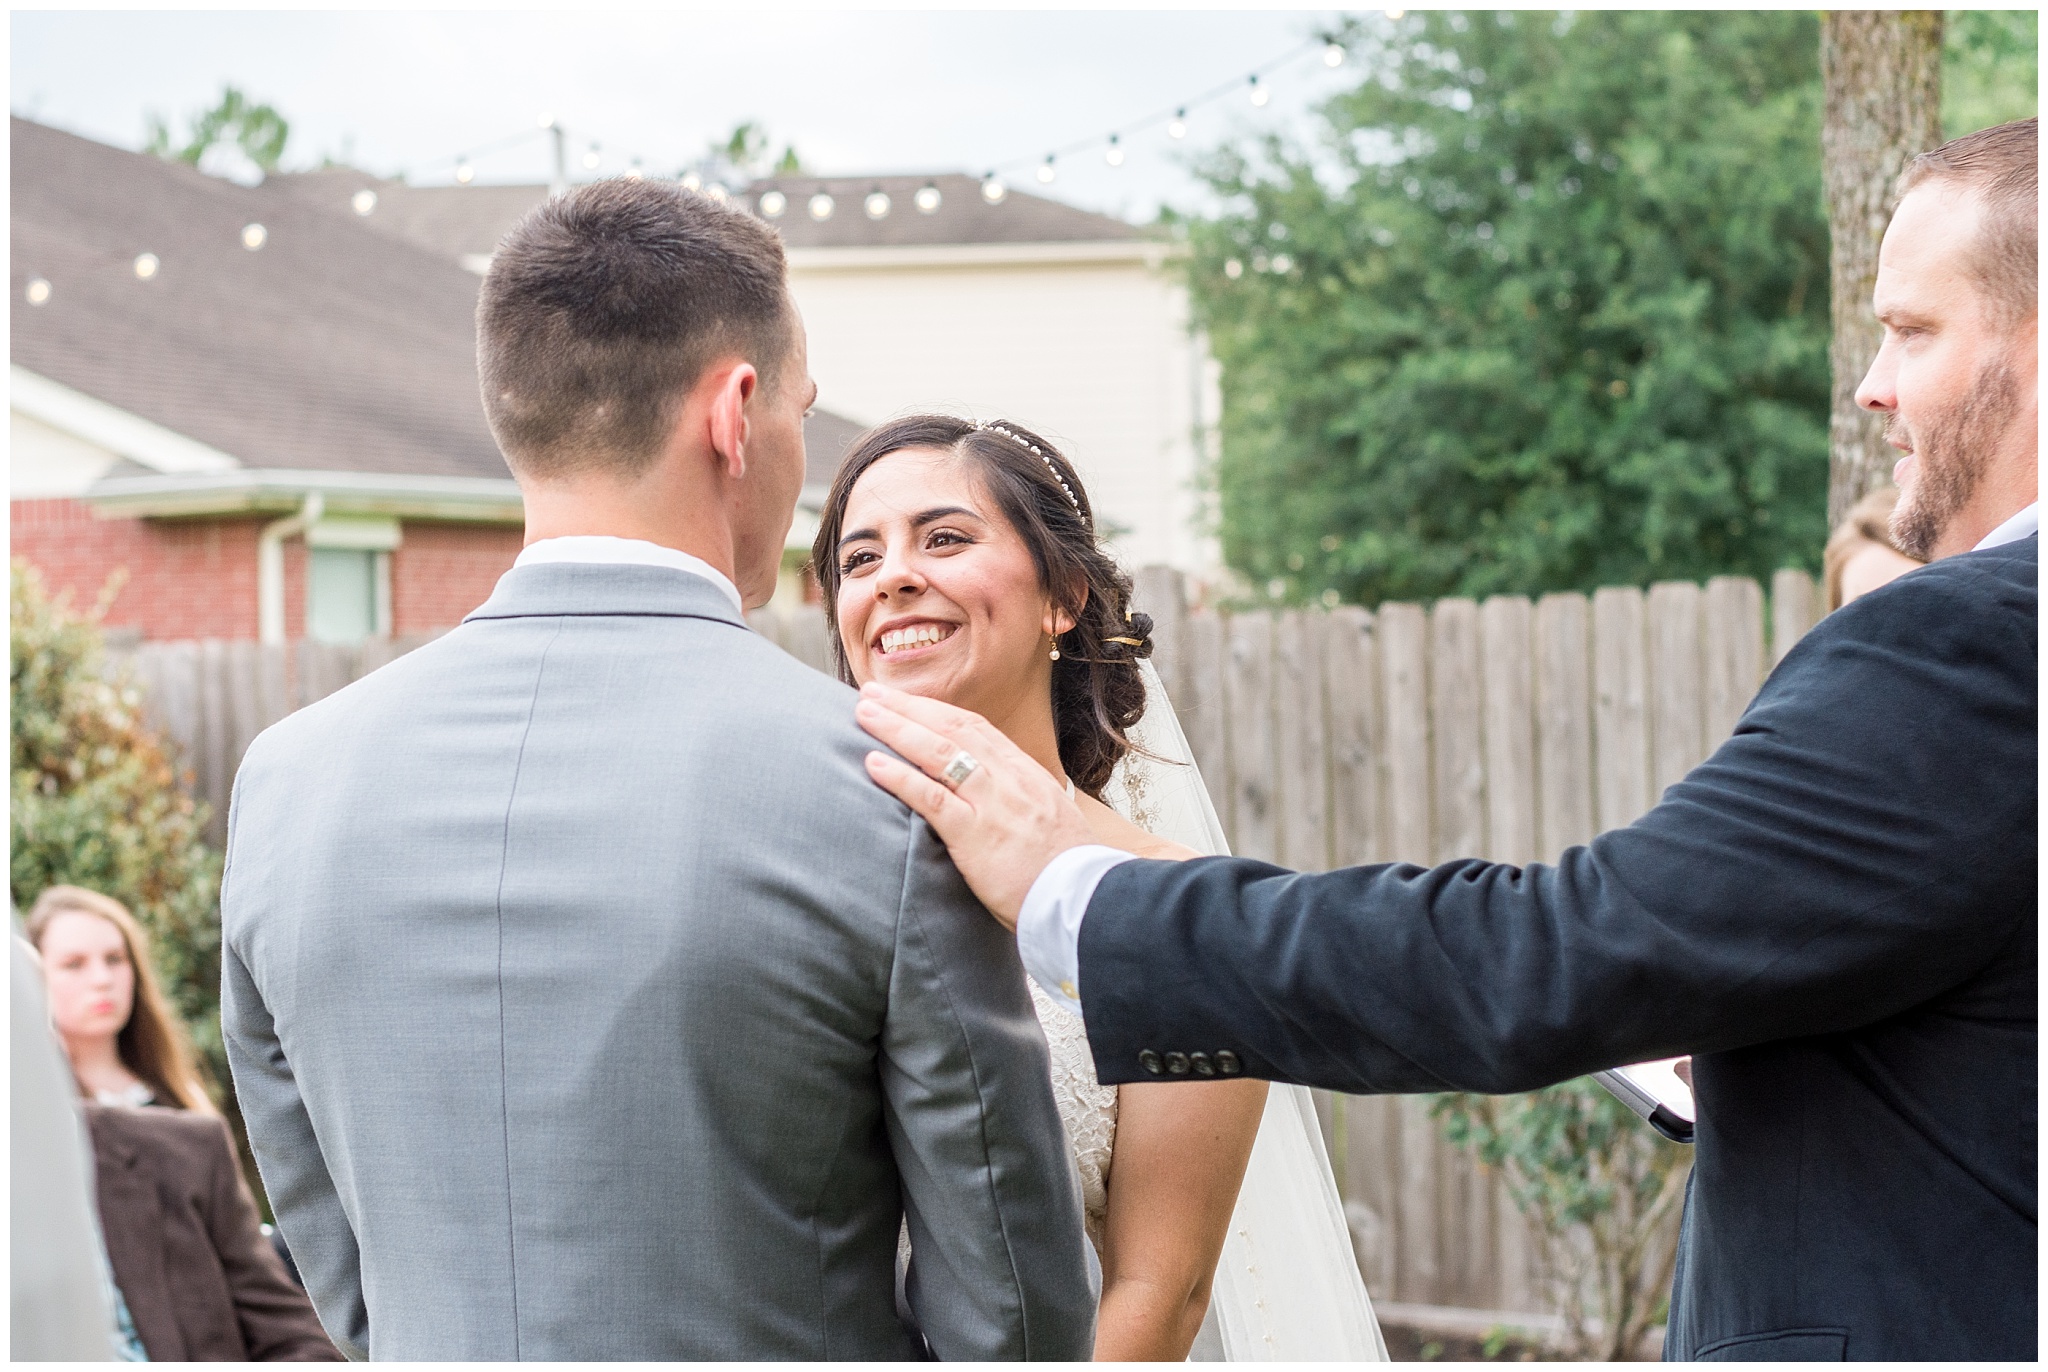 Joyful and Intimate Backyard Wedding Cypress Texas-2017-06-14_0018